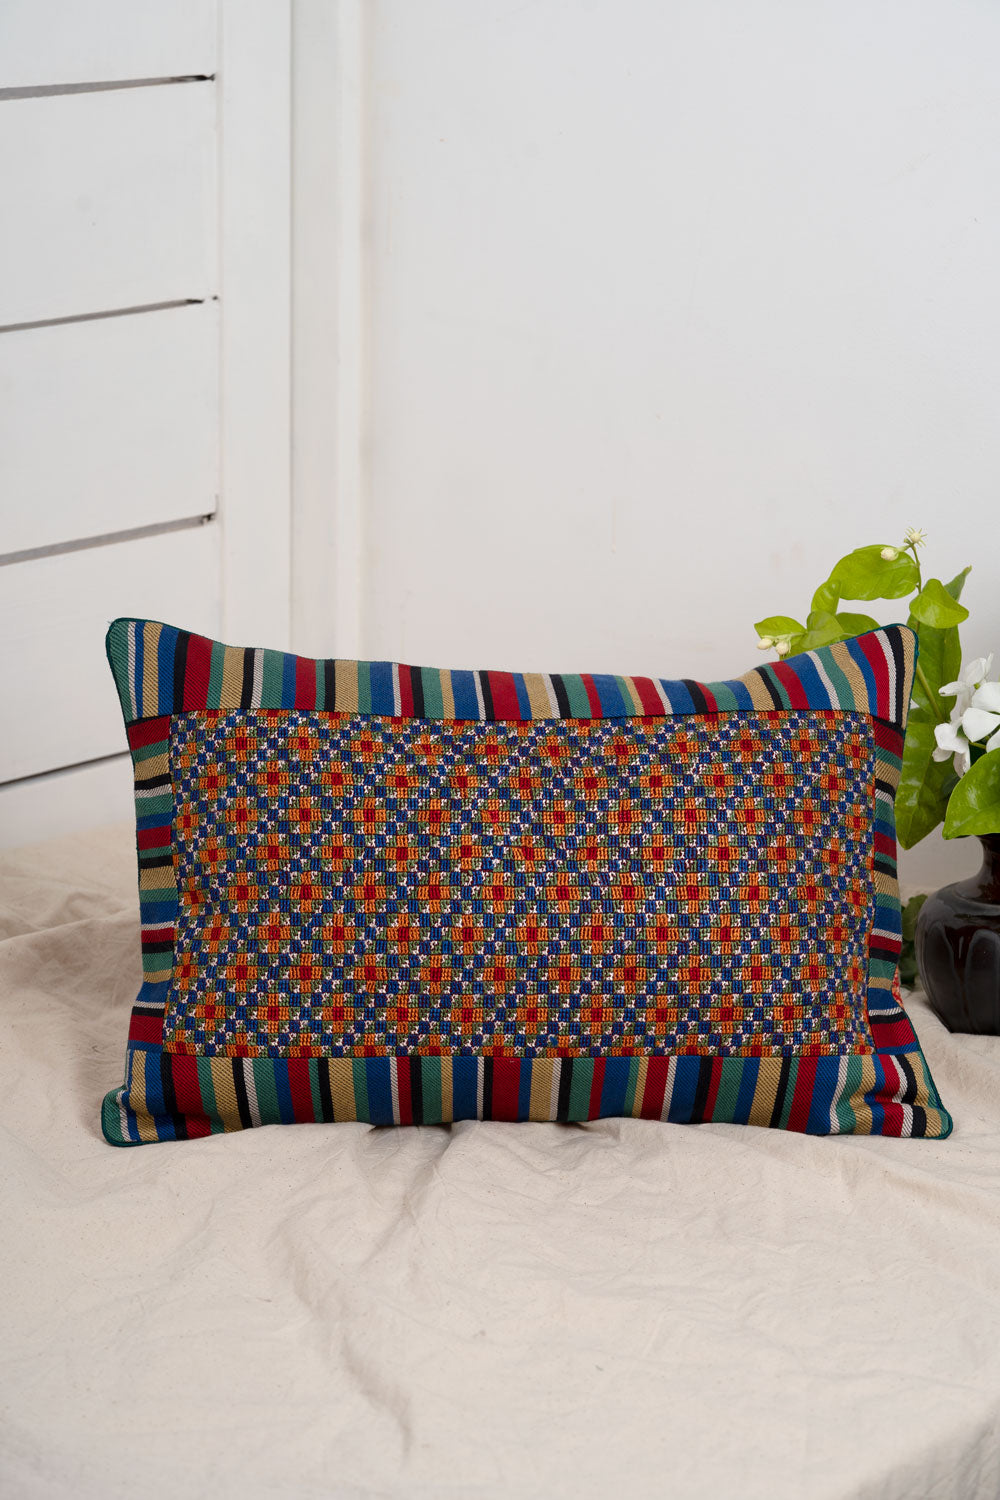 Jat Garasiya Hand Embroidered Cushion  / Pillow Cover